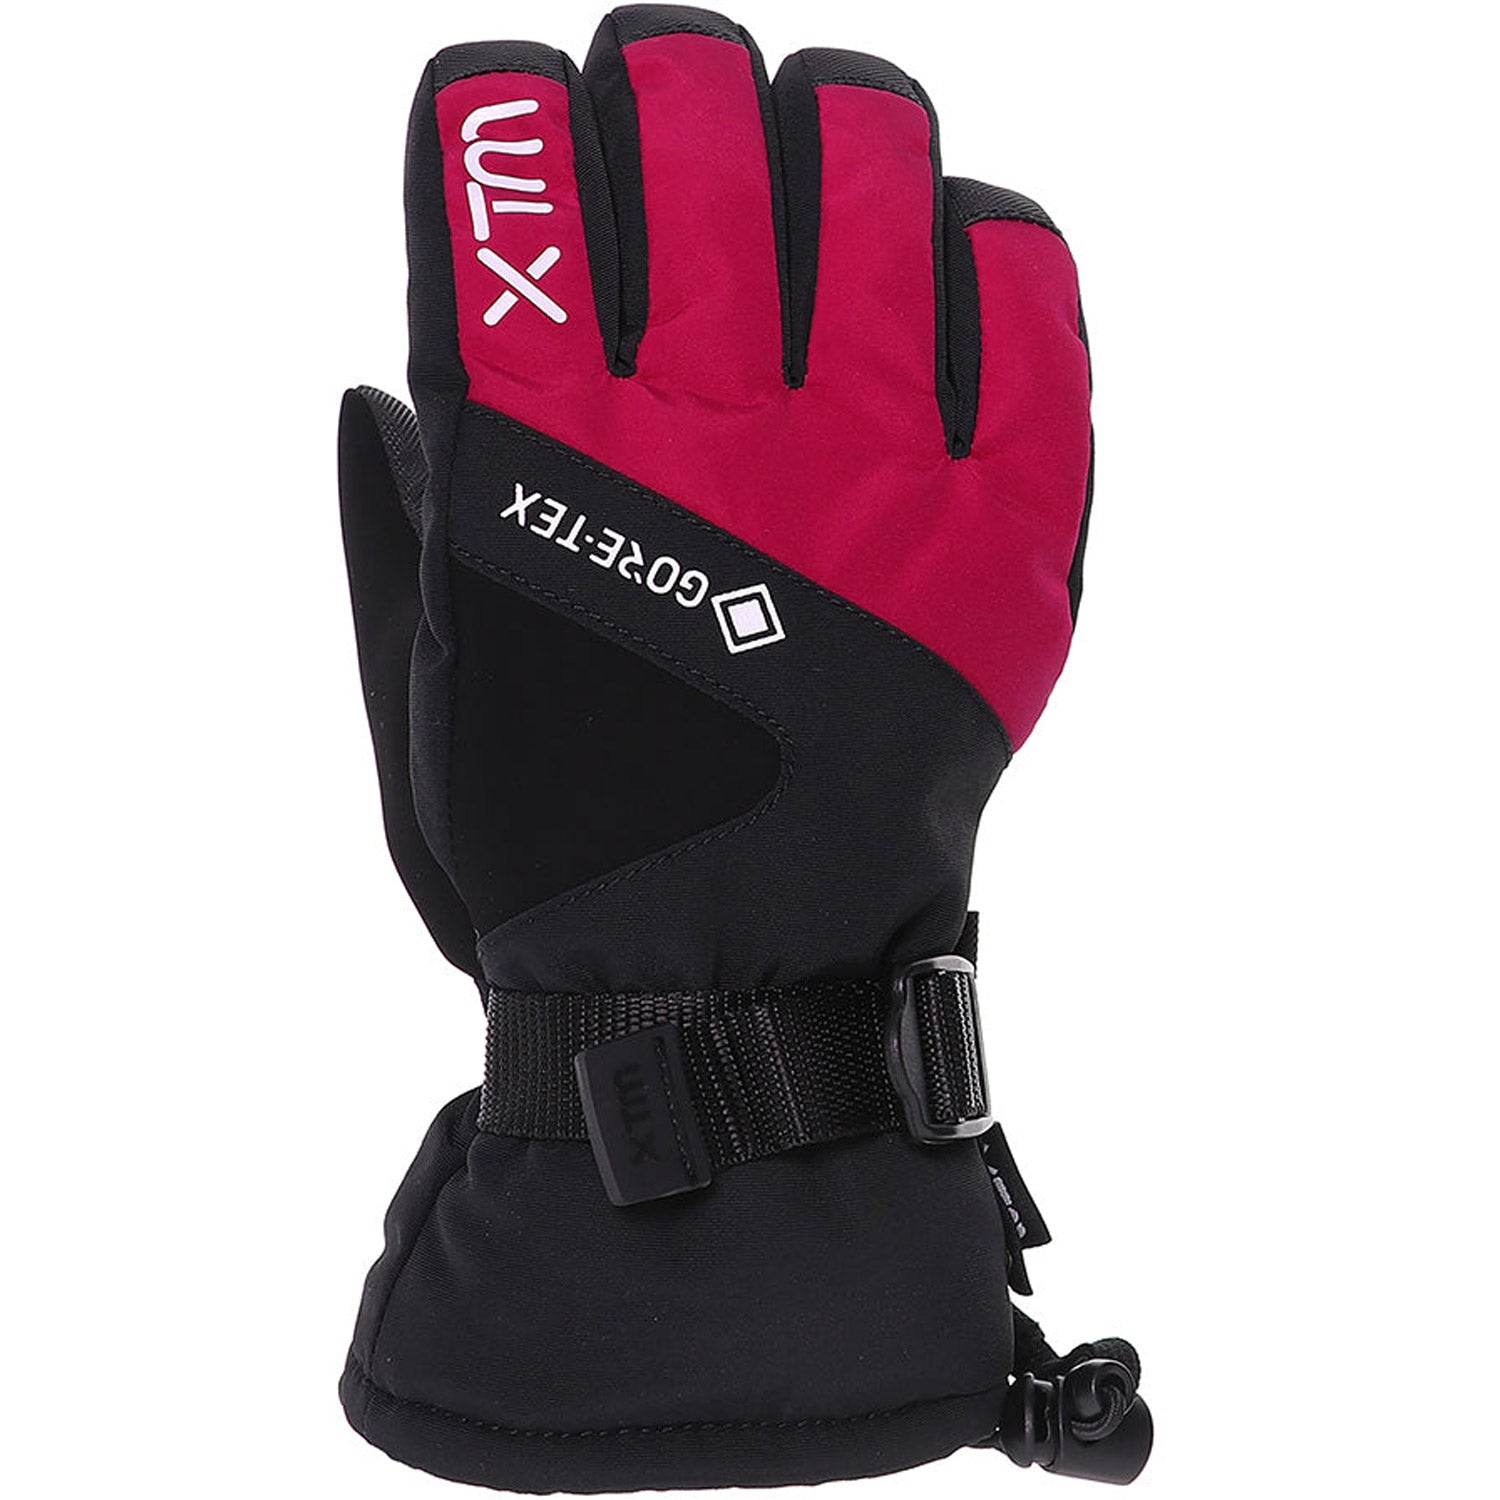 Whistler II GORE-TEX Kids' Snow Glove (6-14 YRS)